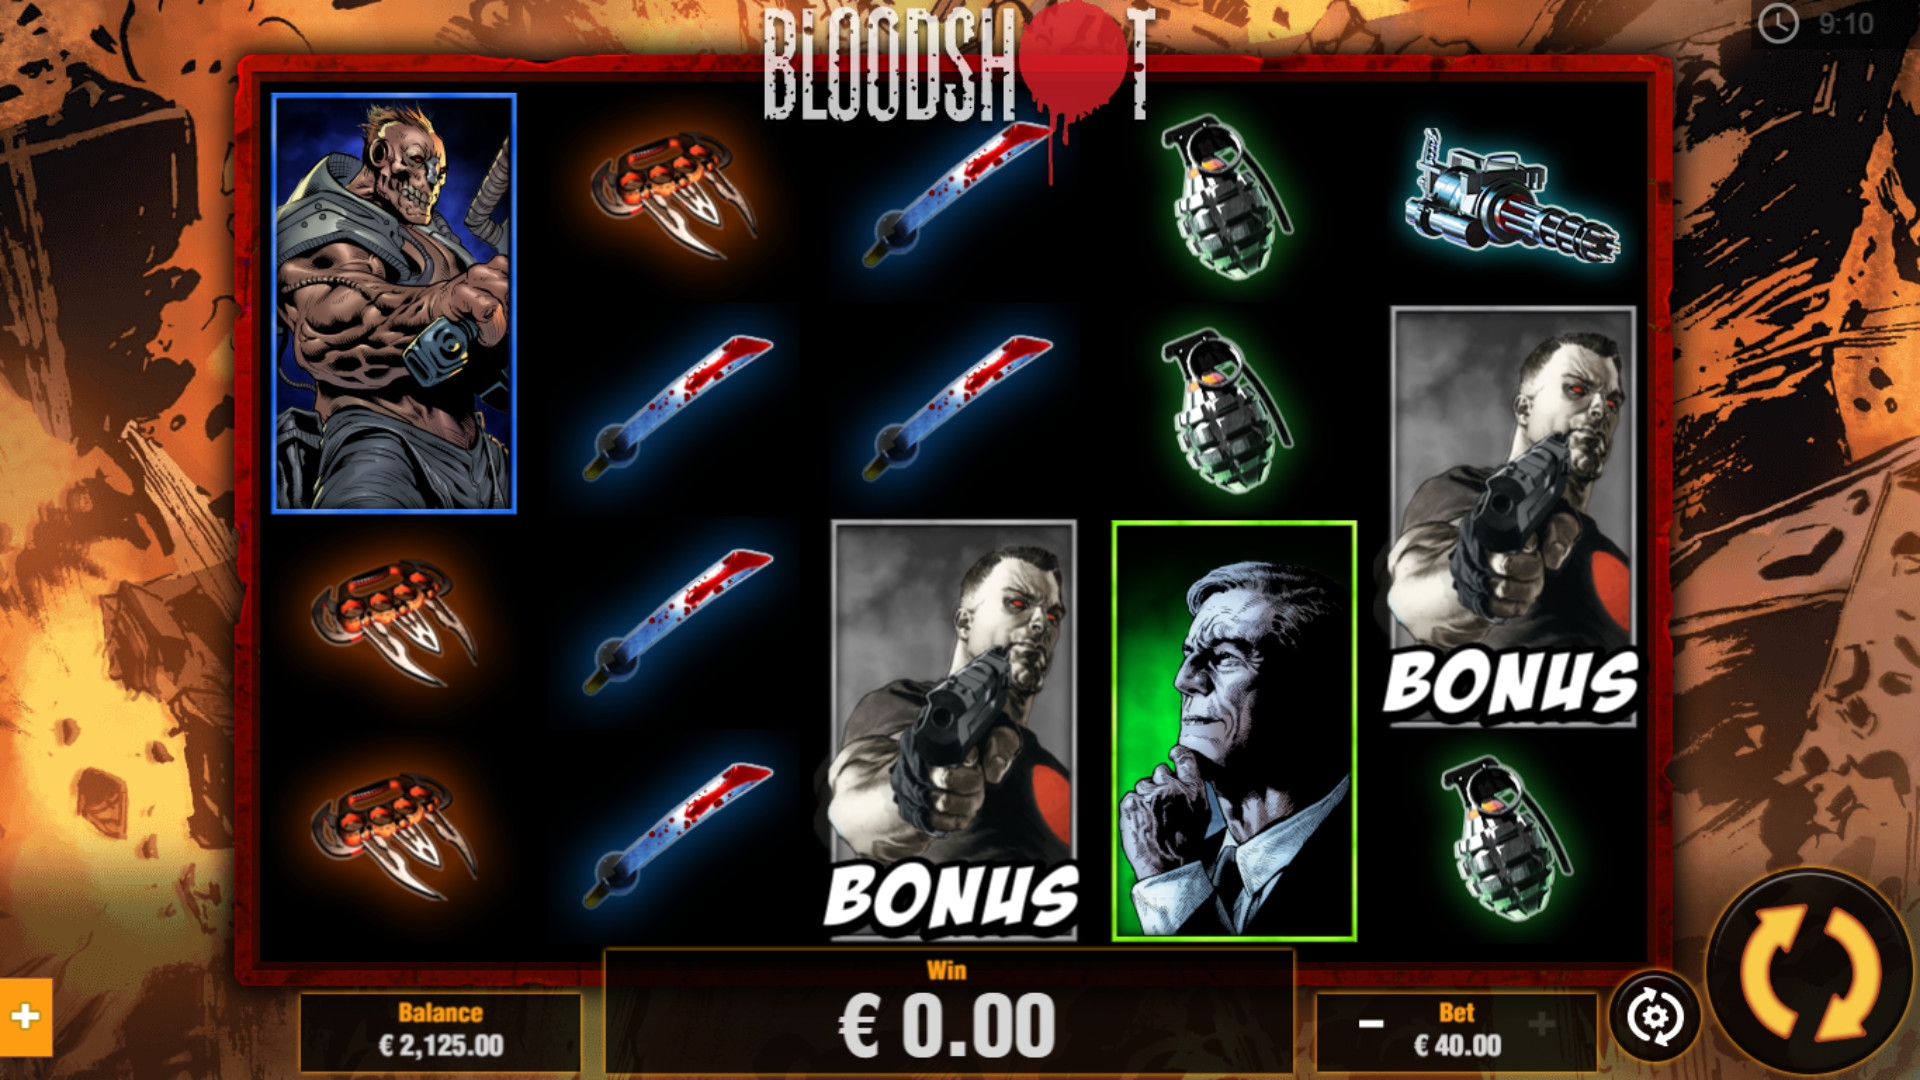 Bloodshot (Bloodshot) from category Slots